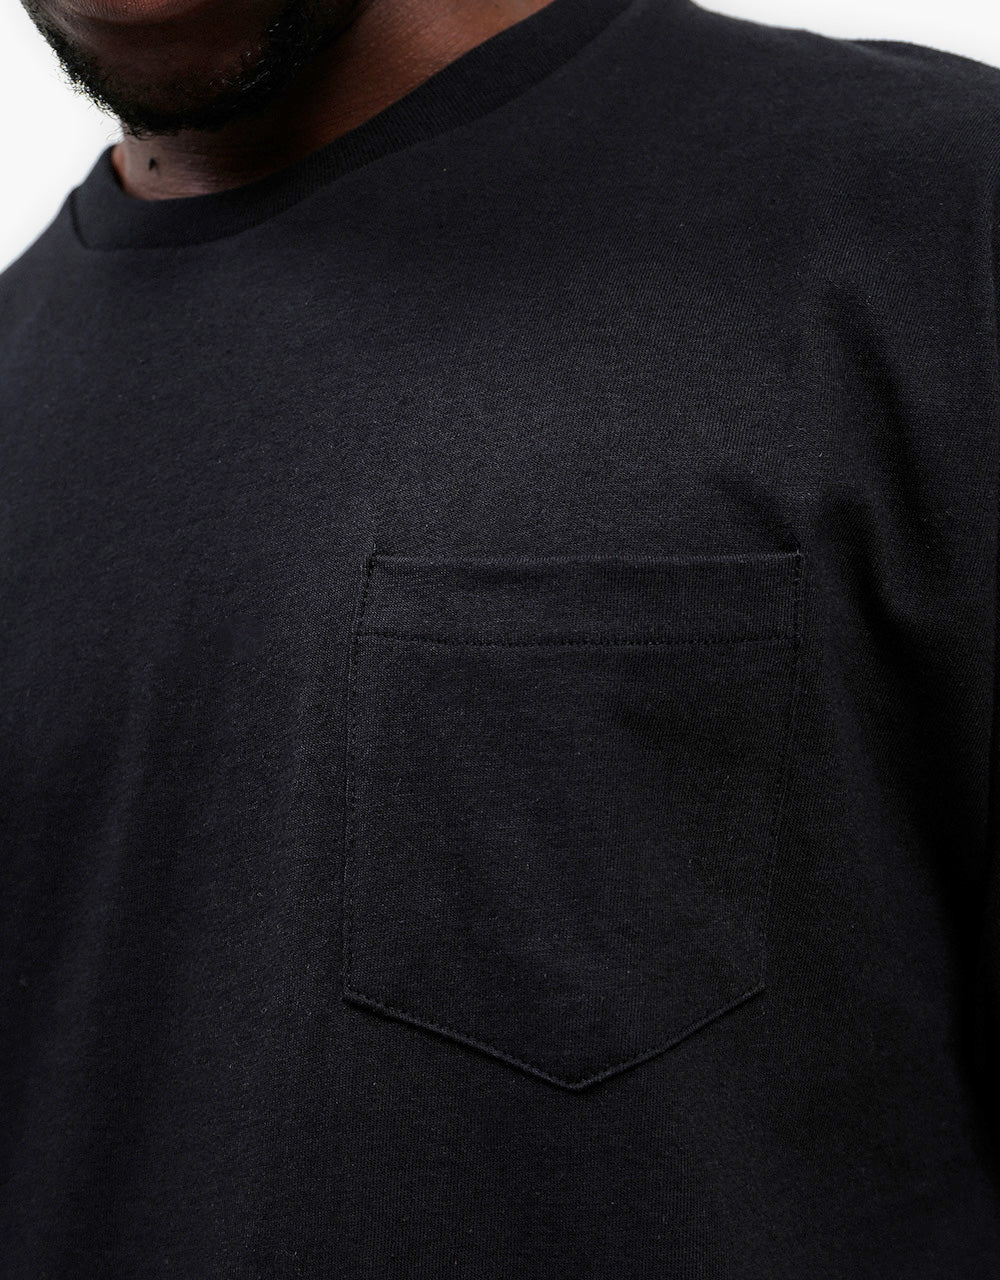 Vans Grosso Forever T-Shirt - Black